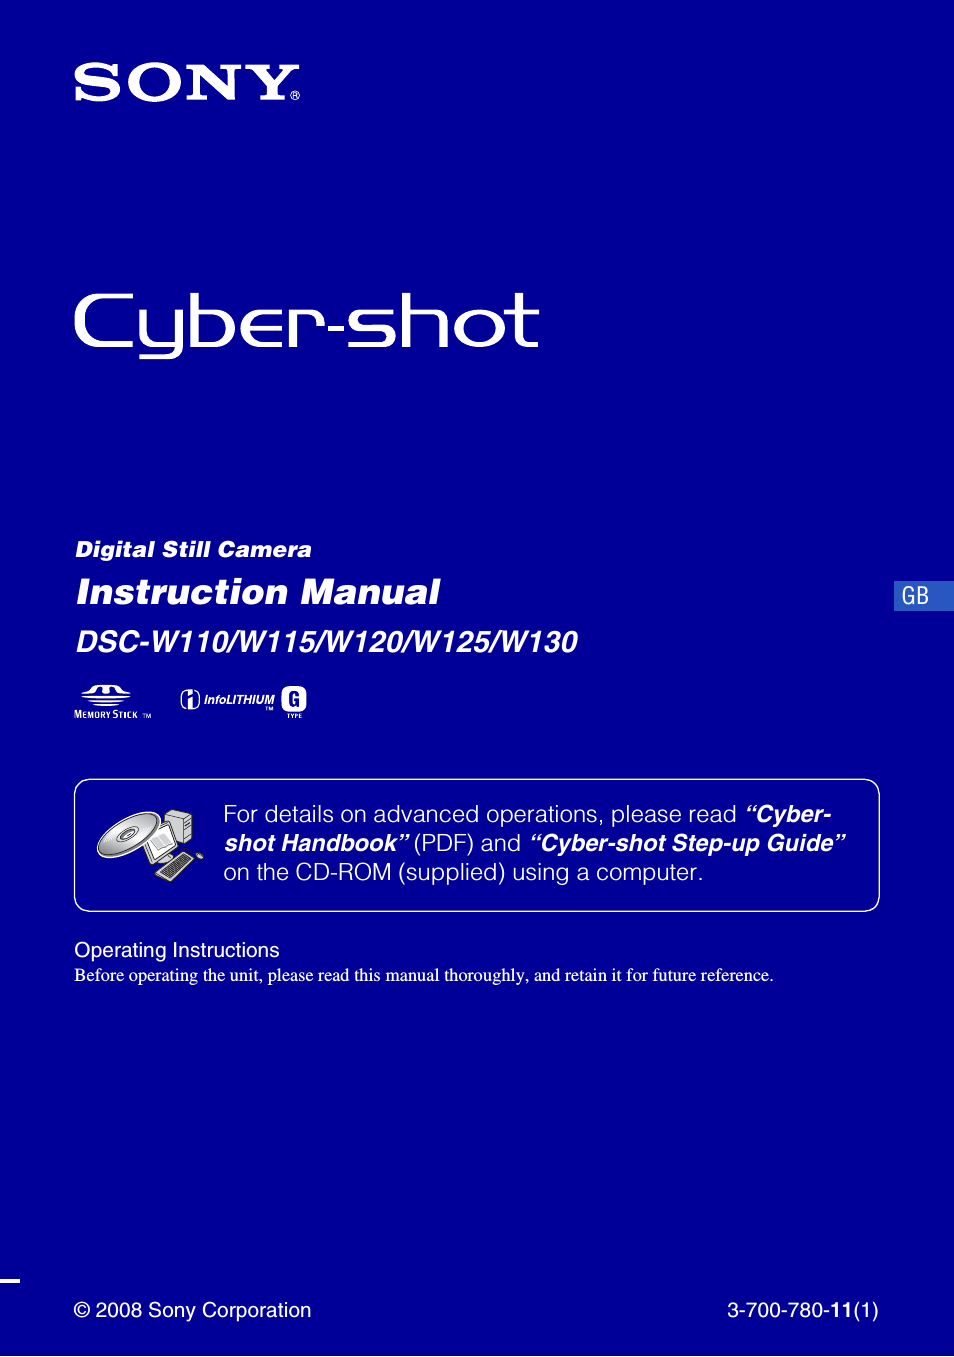 Cyber-shot W130